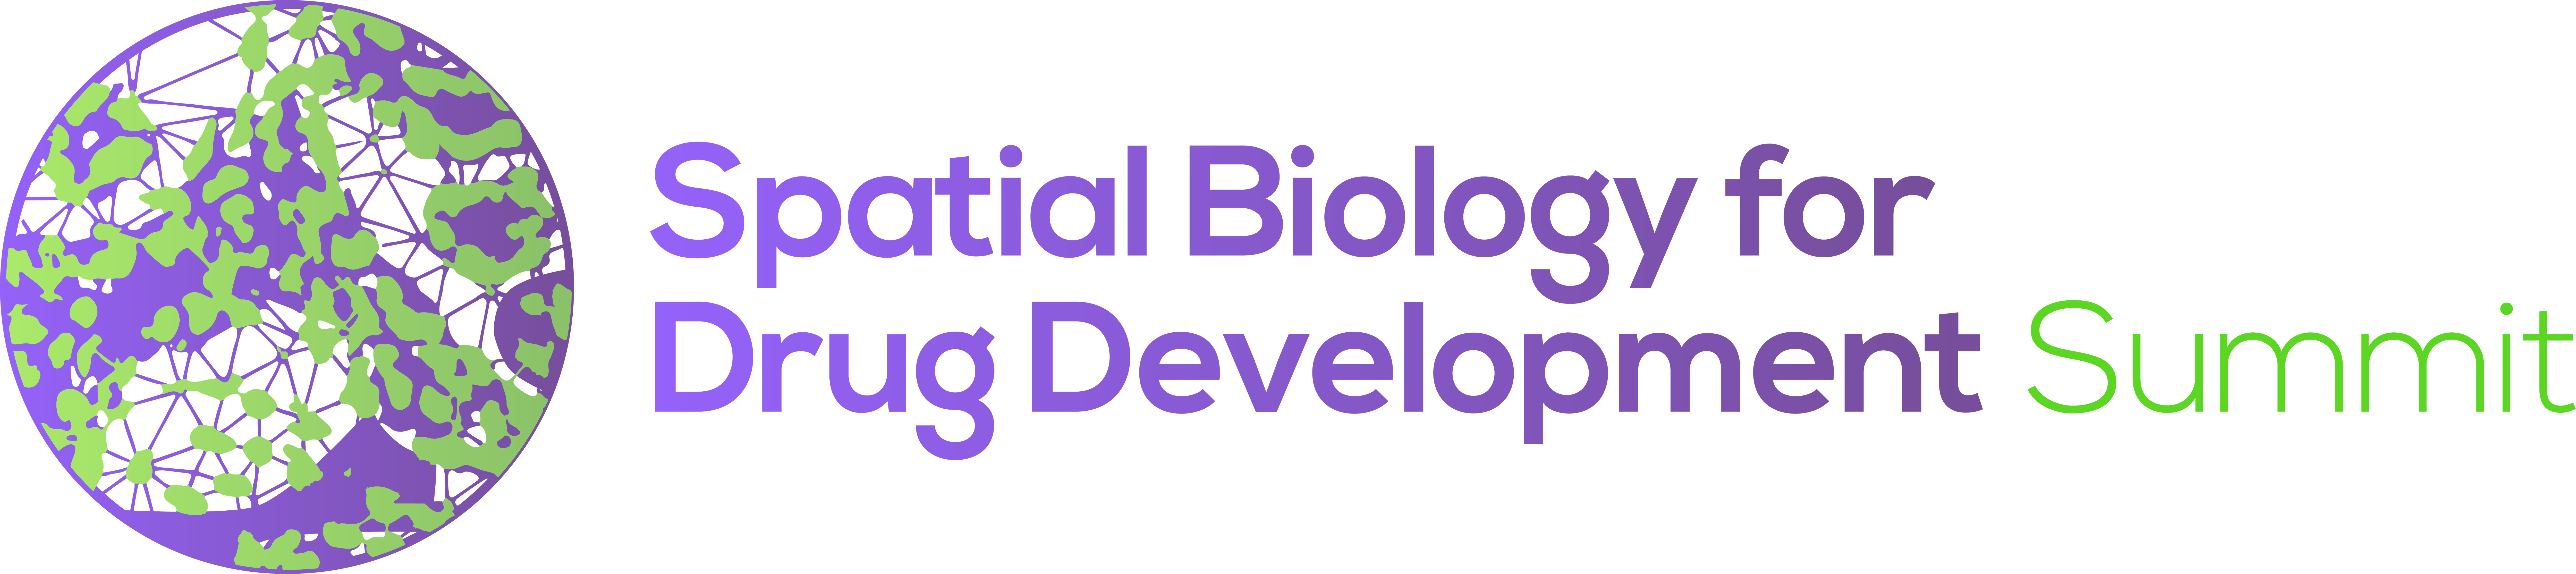 HW230608 Spatial Biology For Drug Development logo FINAL (1)